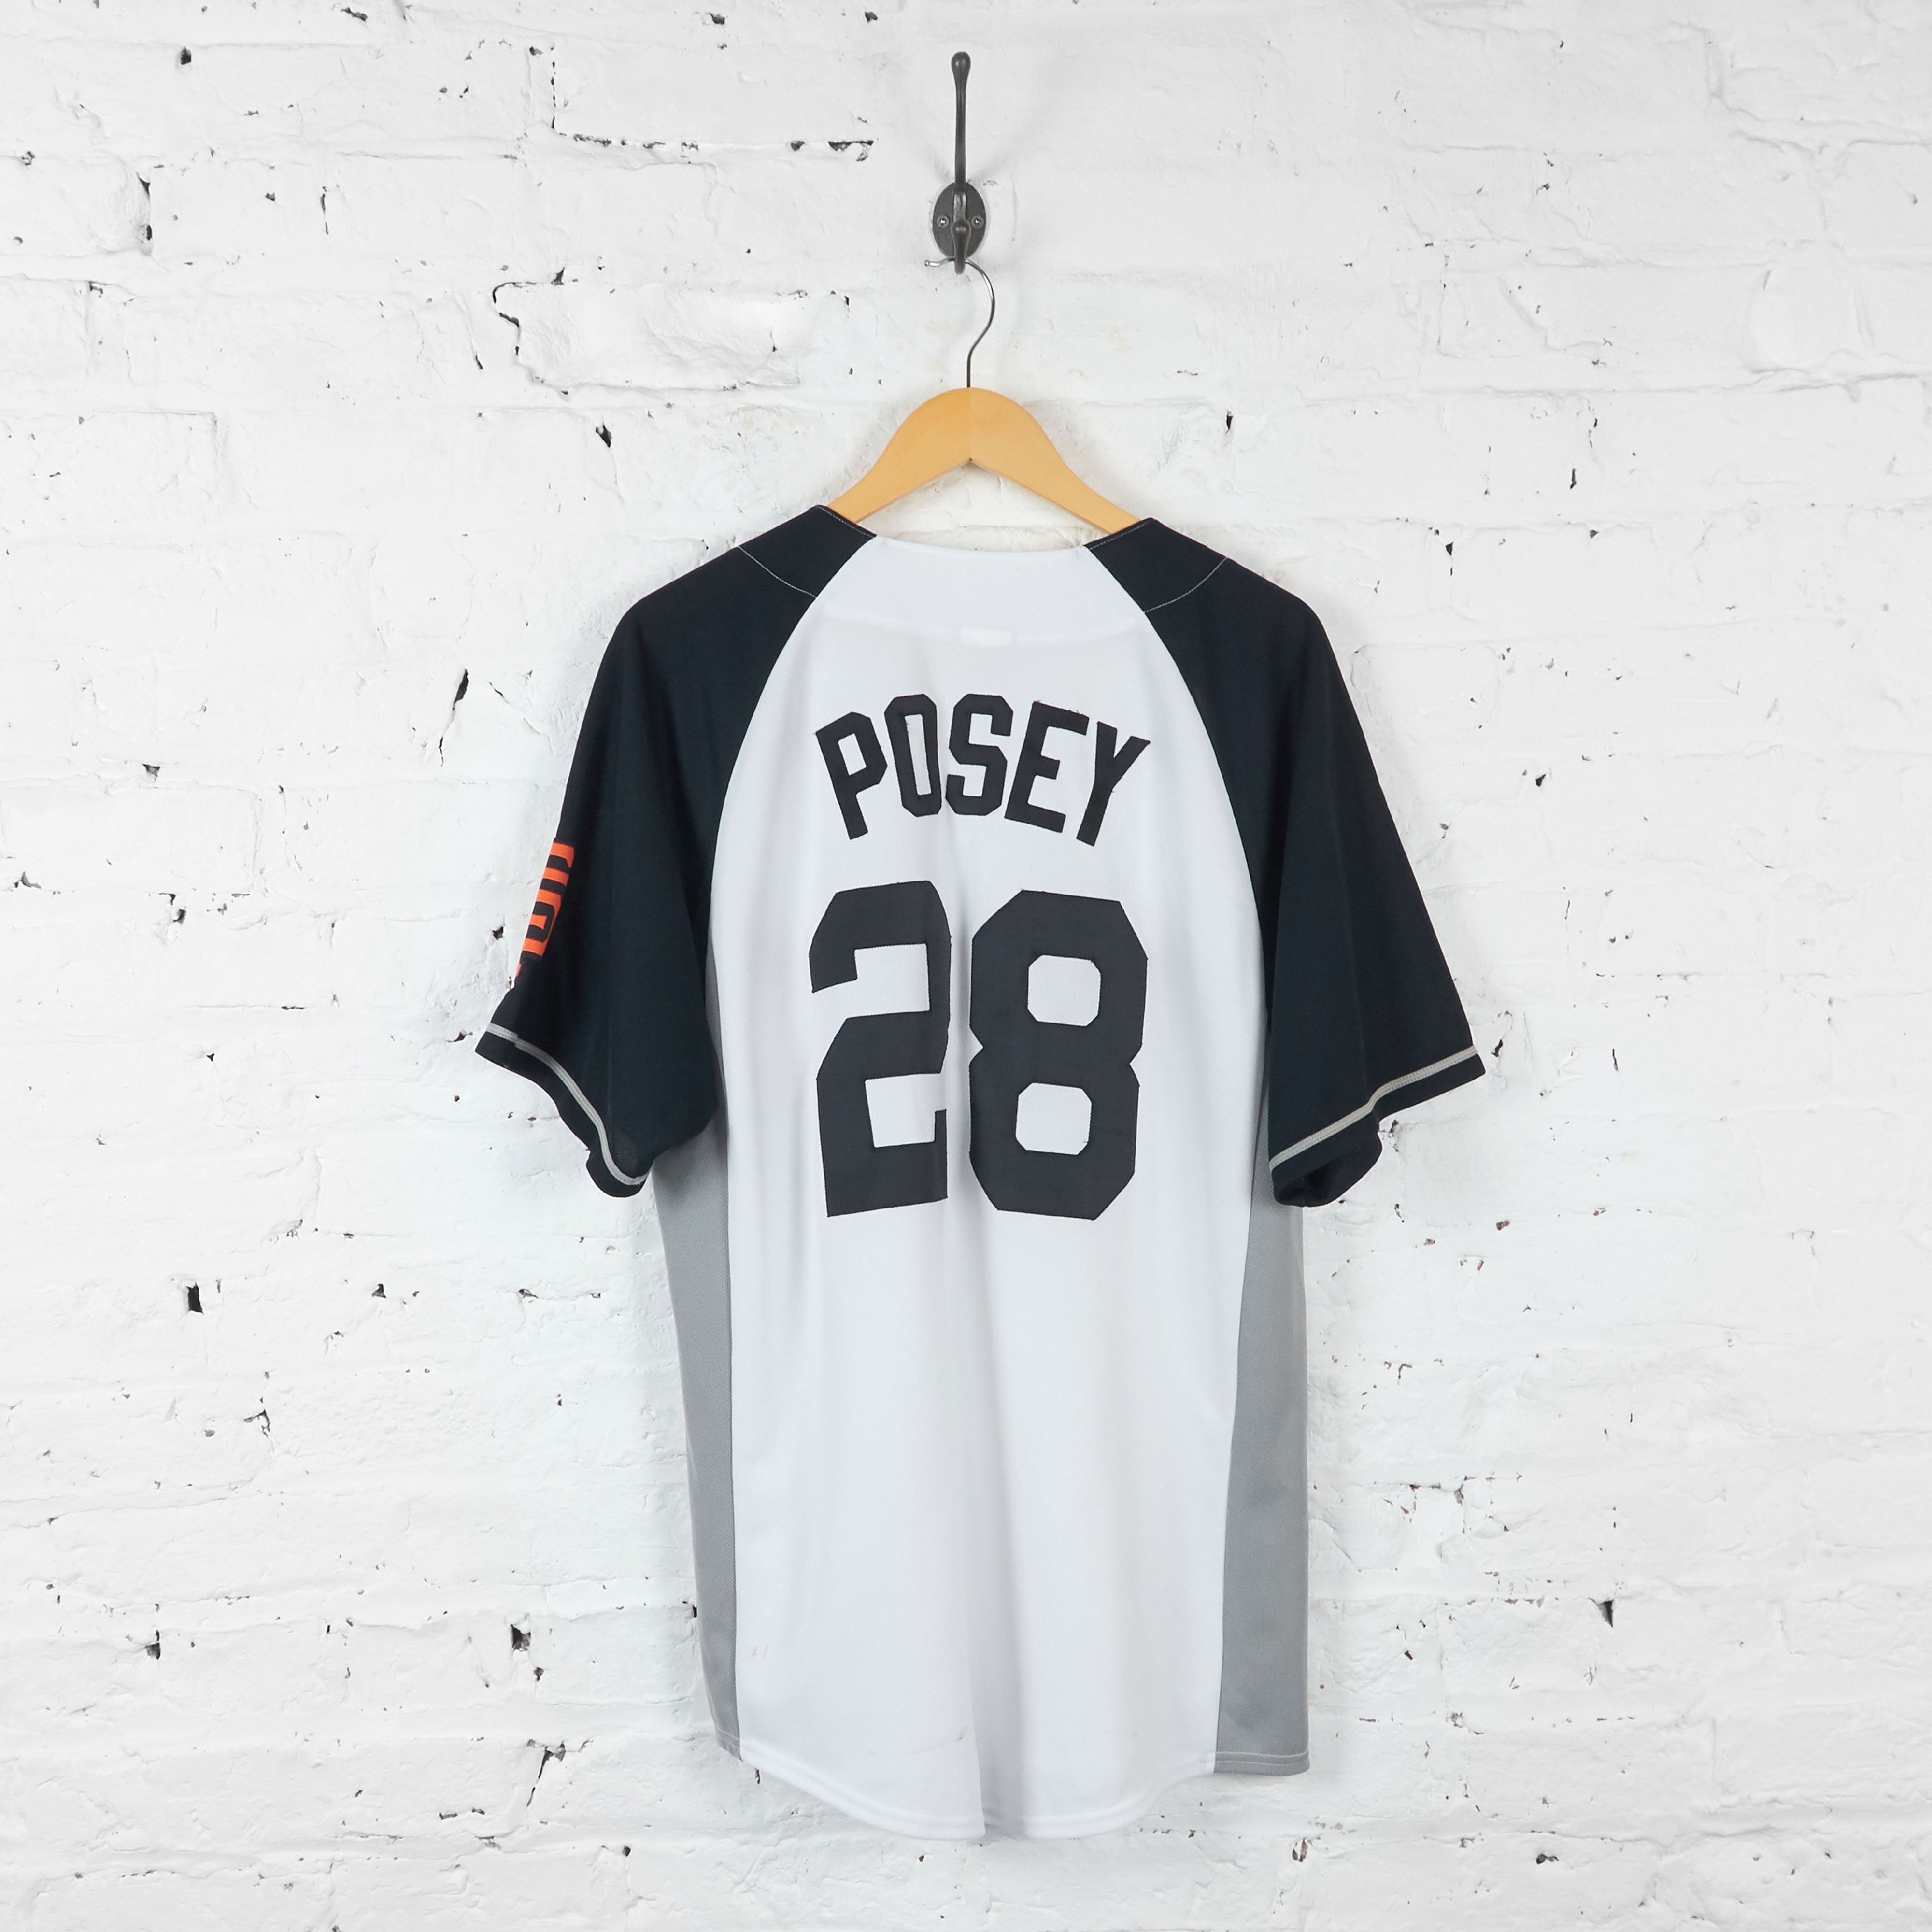 San Francisco Giants Posey Baseball Jersey - White - L – Headlock